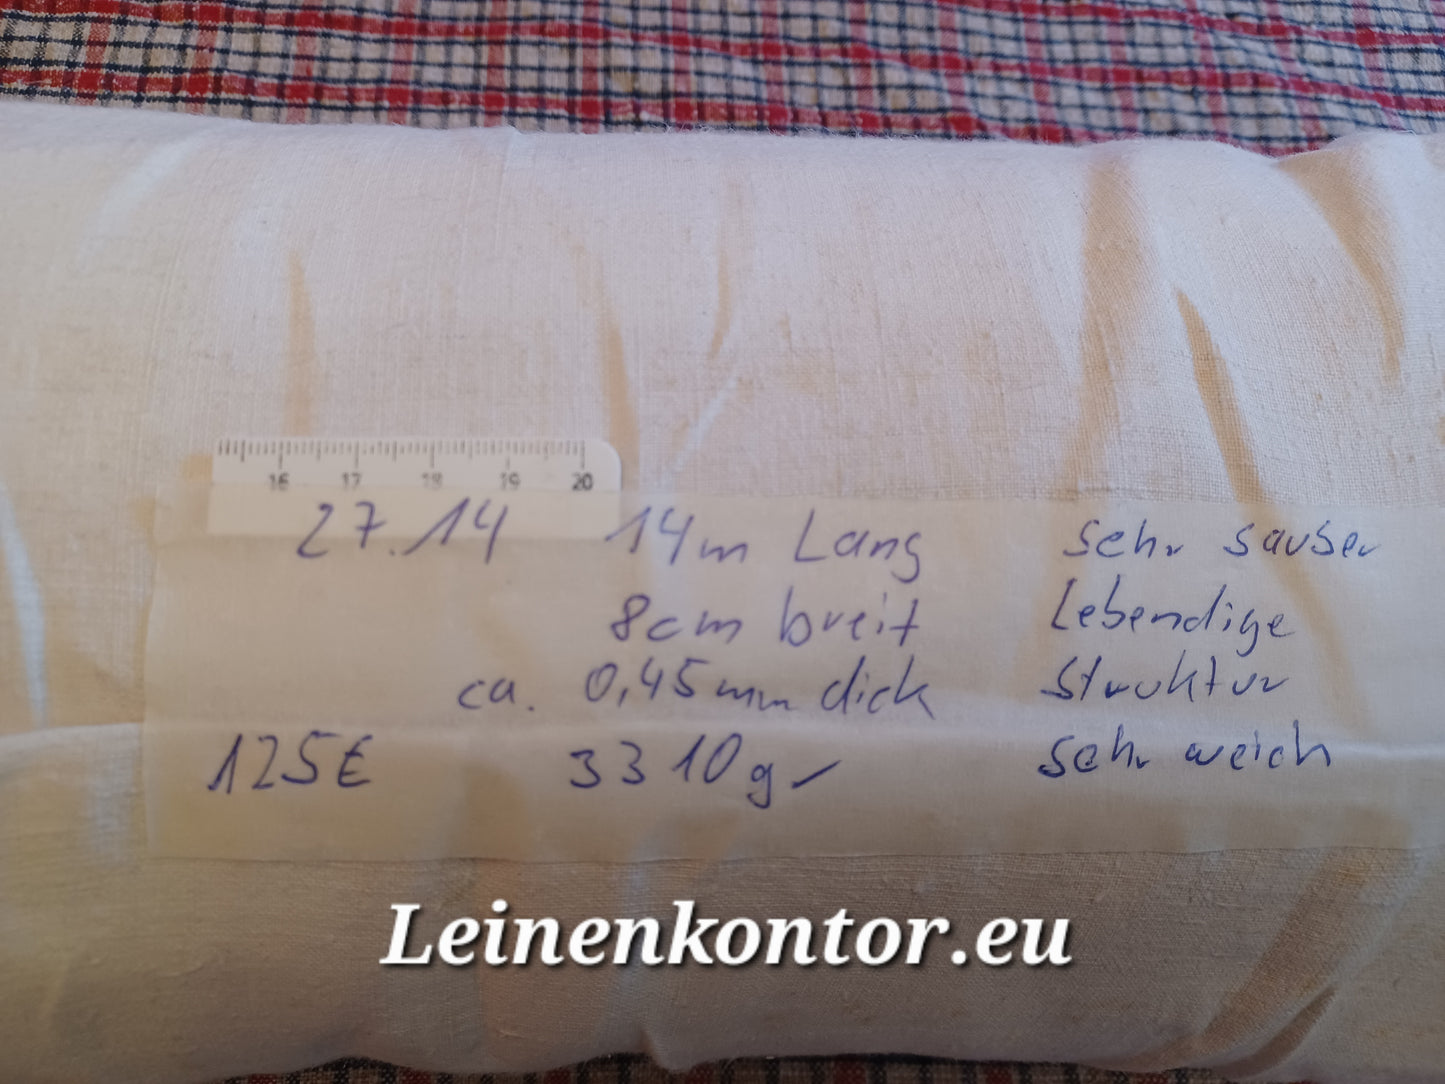 27.14 (14m x 0,80m x 0,45mm 3310gr) Bauernleinen Linnen Leinenballen Leinen Landhaus Leinenstoff